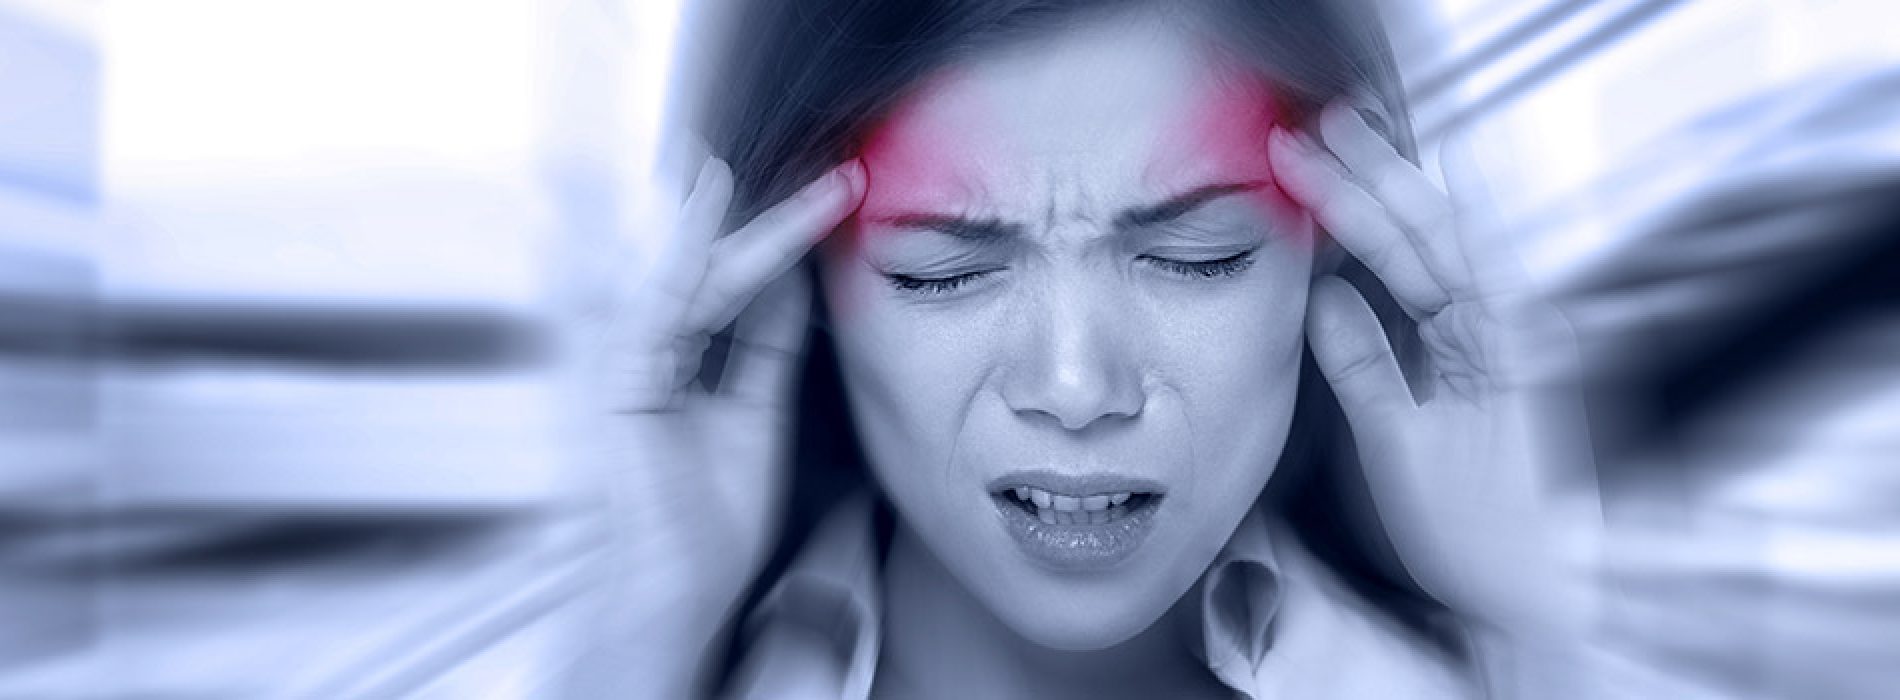 Goed nieuws voor mensen met migraine. Deze geneeskrachtige plant werkt beter tegen de pijn dan medicijnen